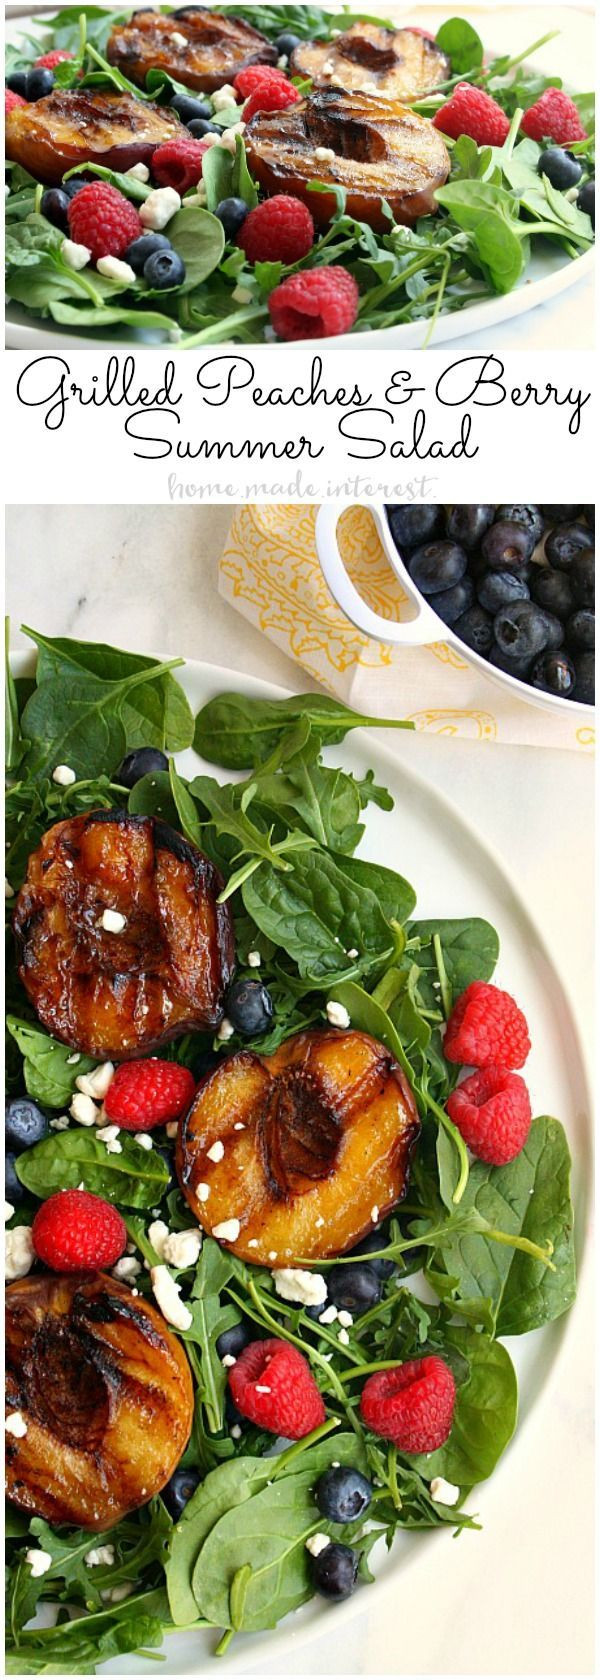 Healthy Summer Dinner Recipes
 Best 25 Healthy summer dinner recipes ideas on Pinterest